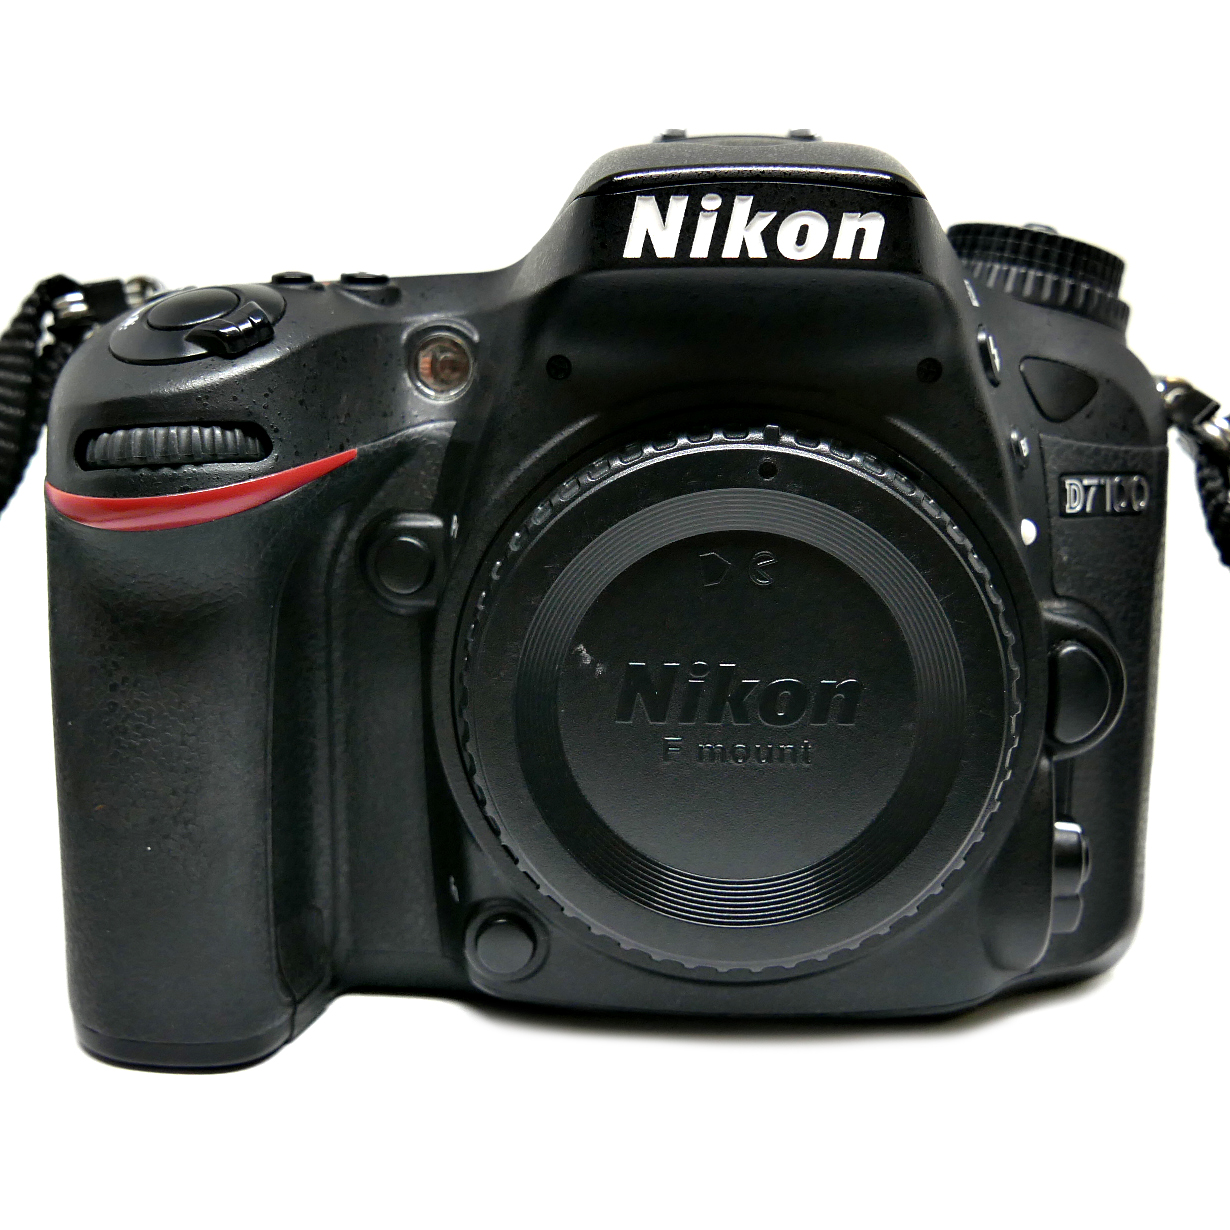 (Myyty) Nikon D7100 (SC:26110) (käytetty)